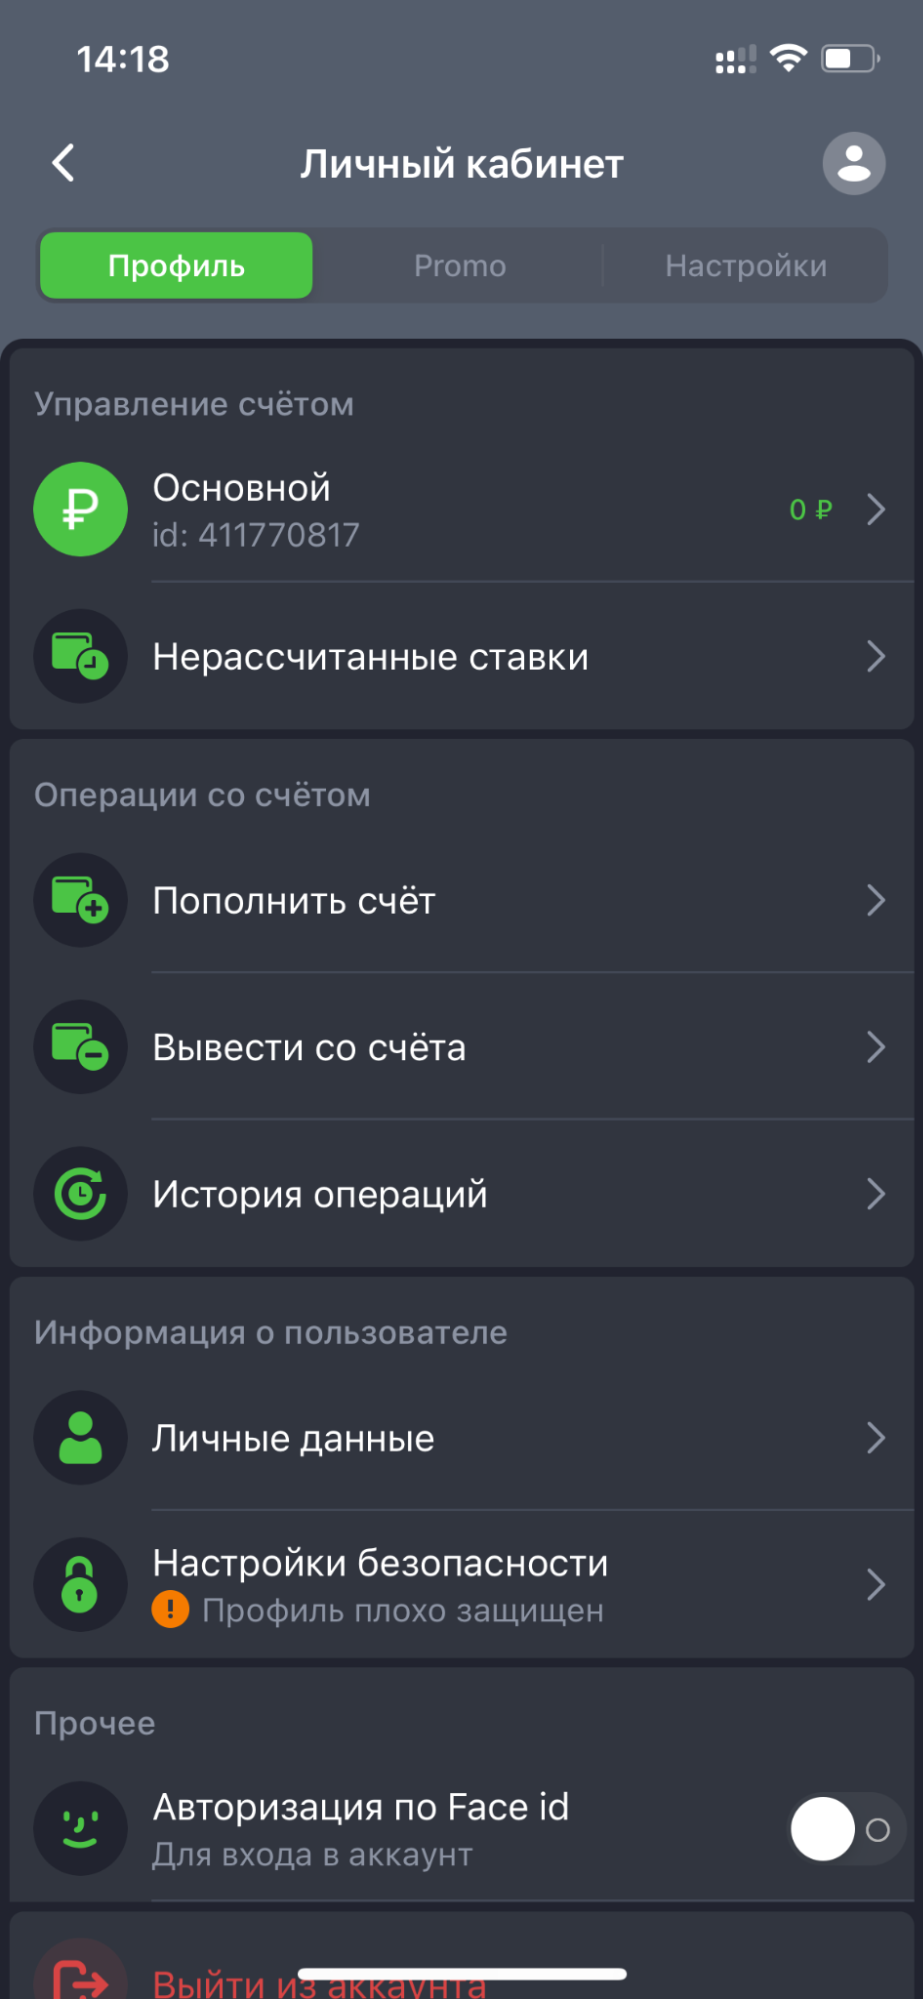 Раздел профиль в личном кабинете в приложении БК Astrabet для iOS